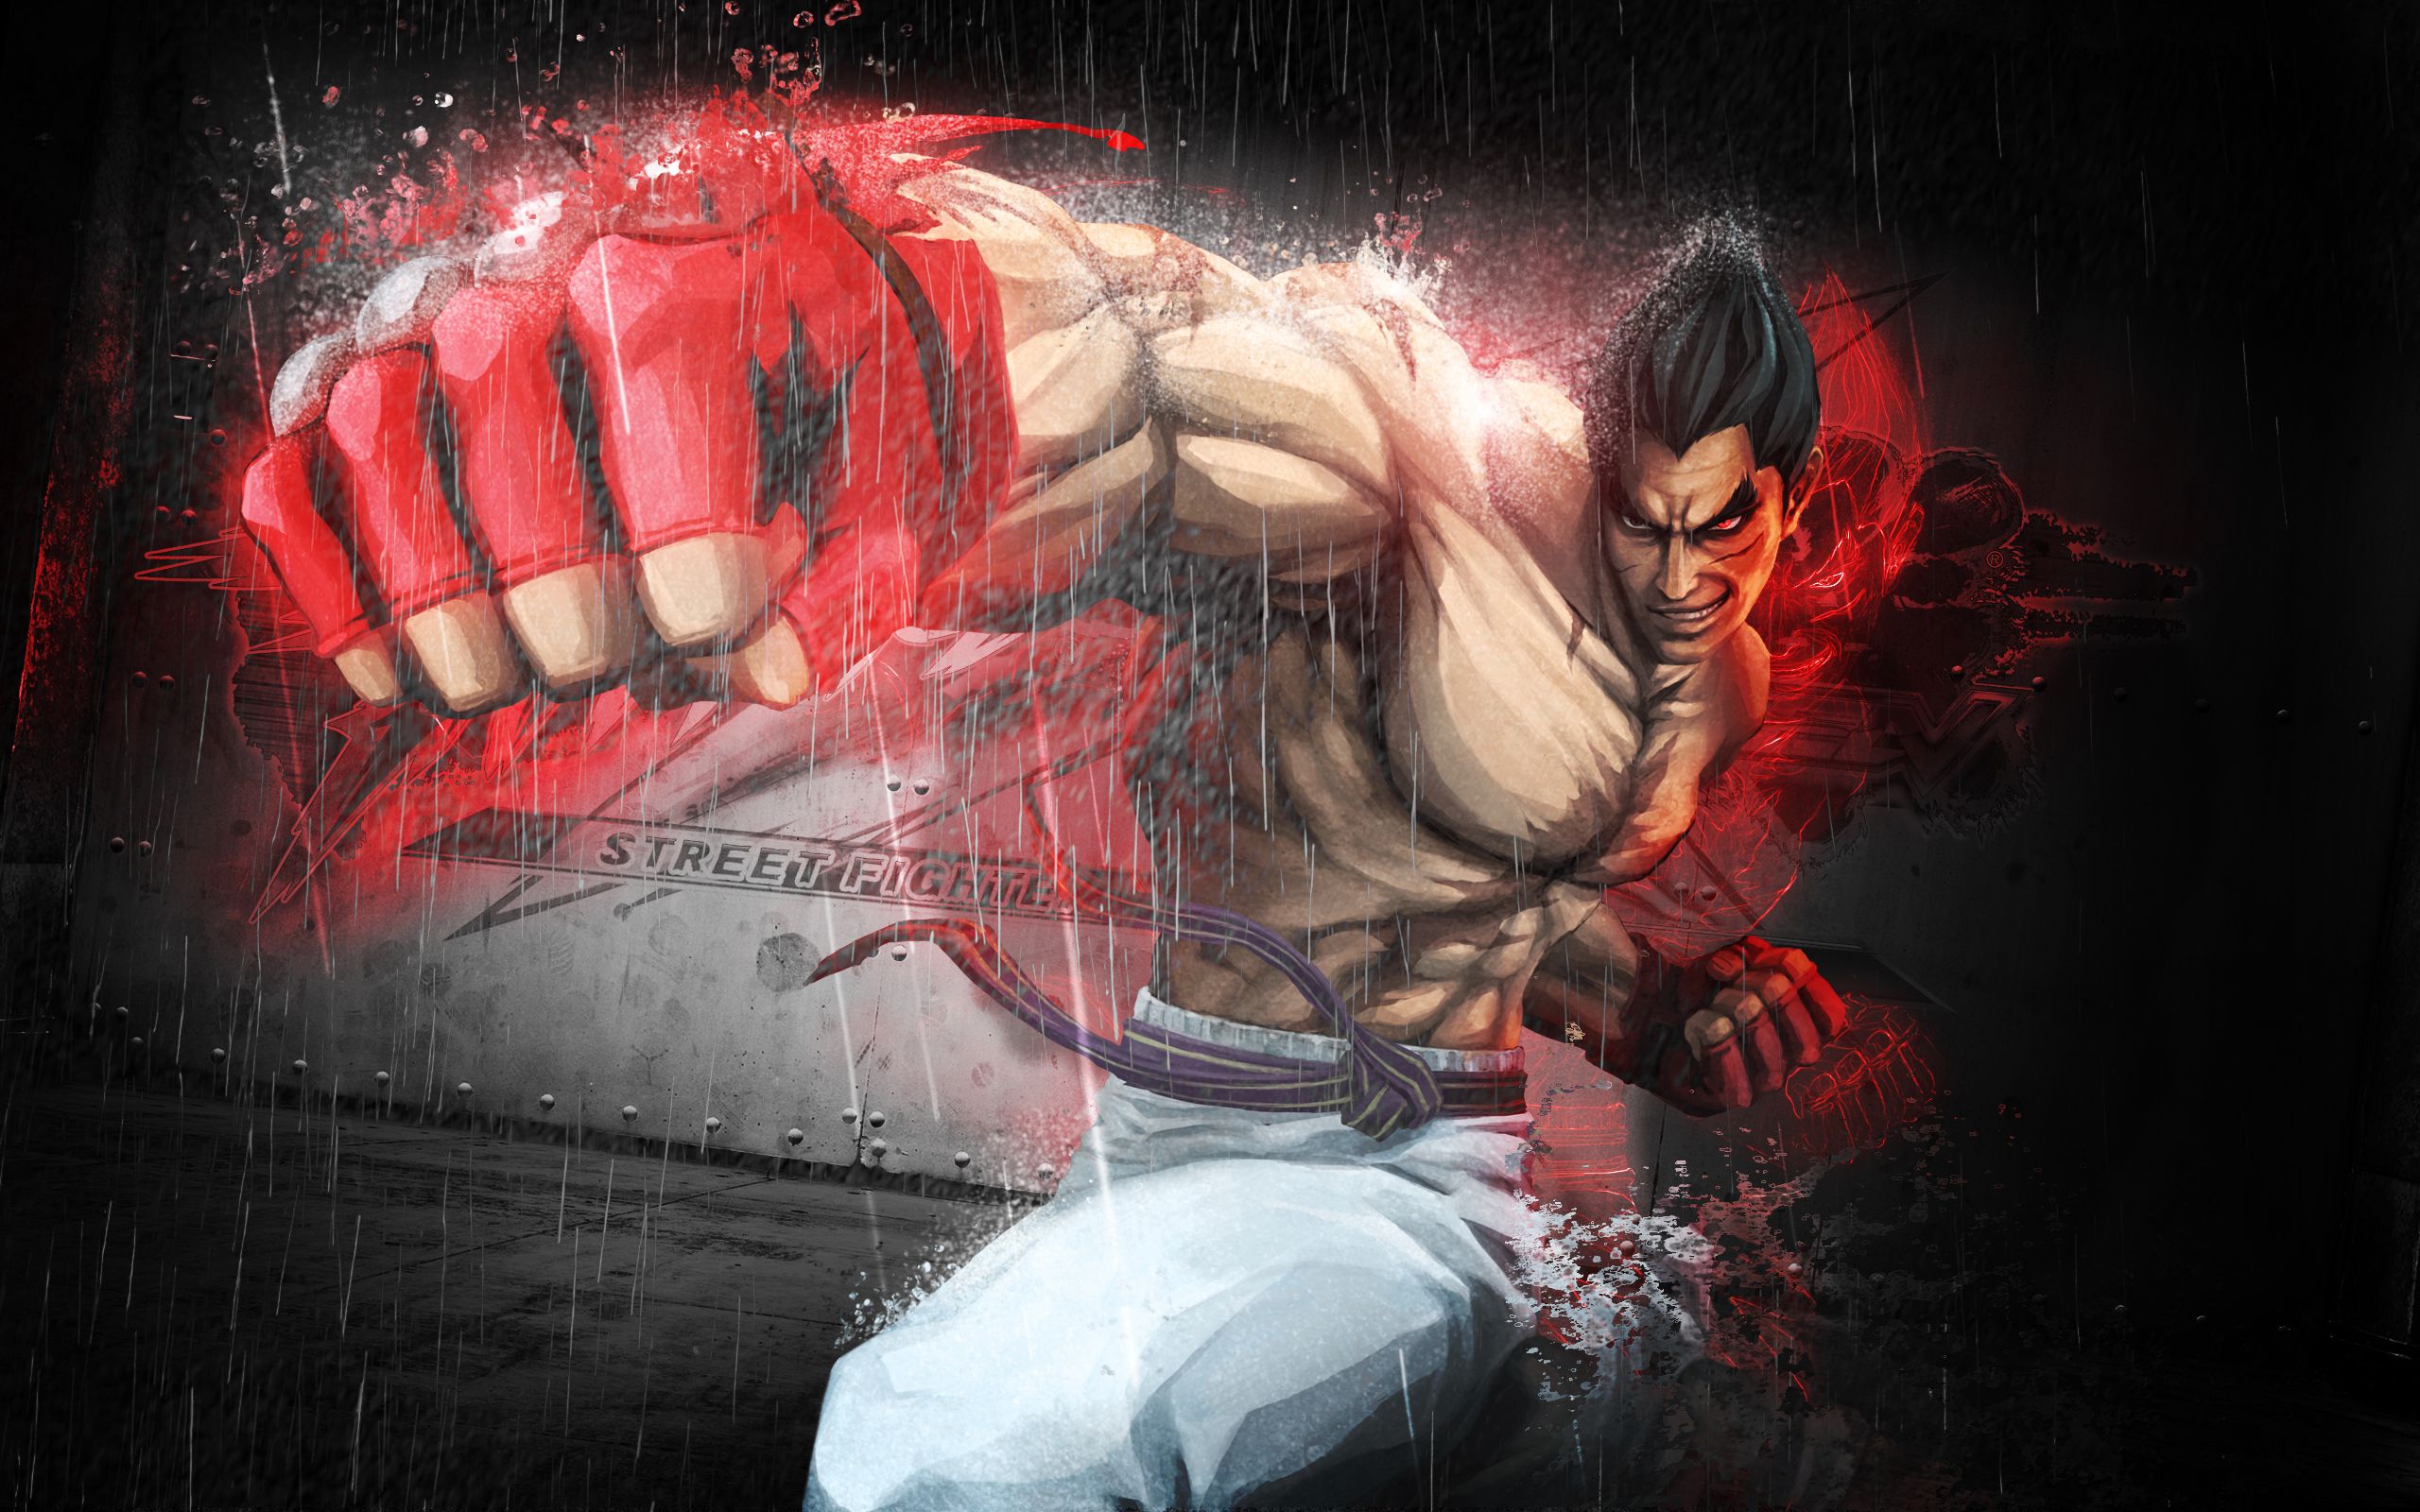 Tekken Games HD Wallpapers | Tekken Games Desktop Images | Cool ...